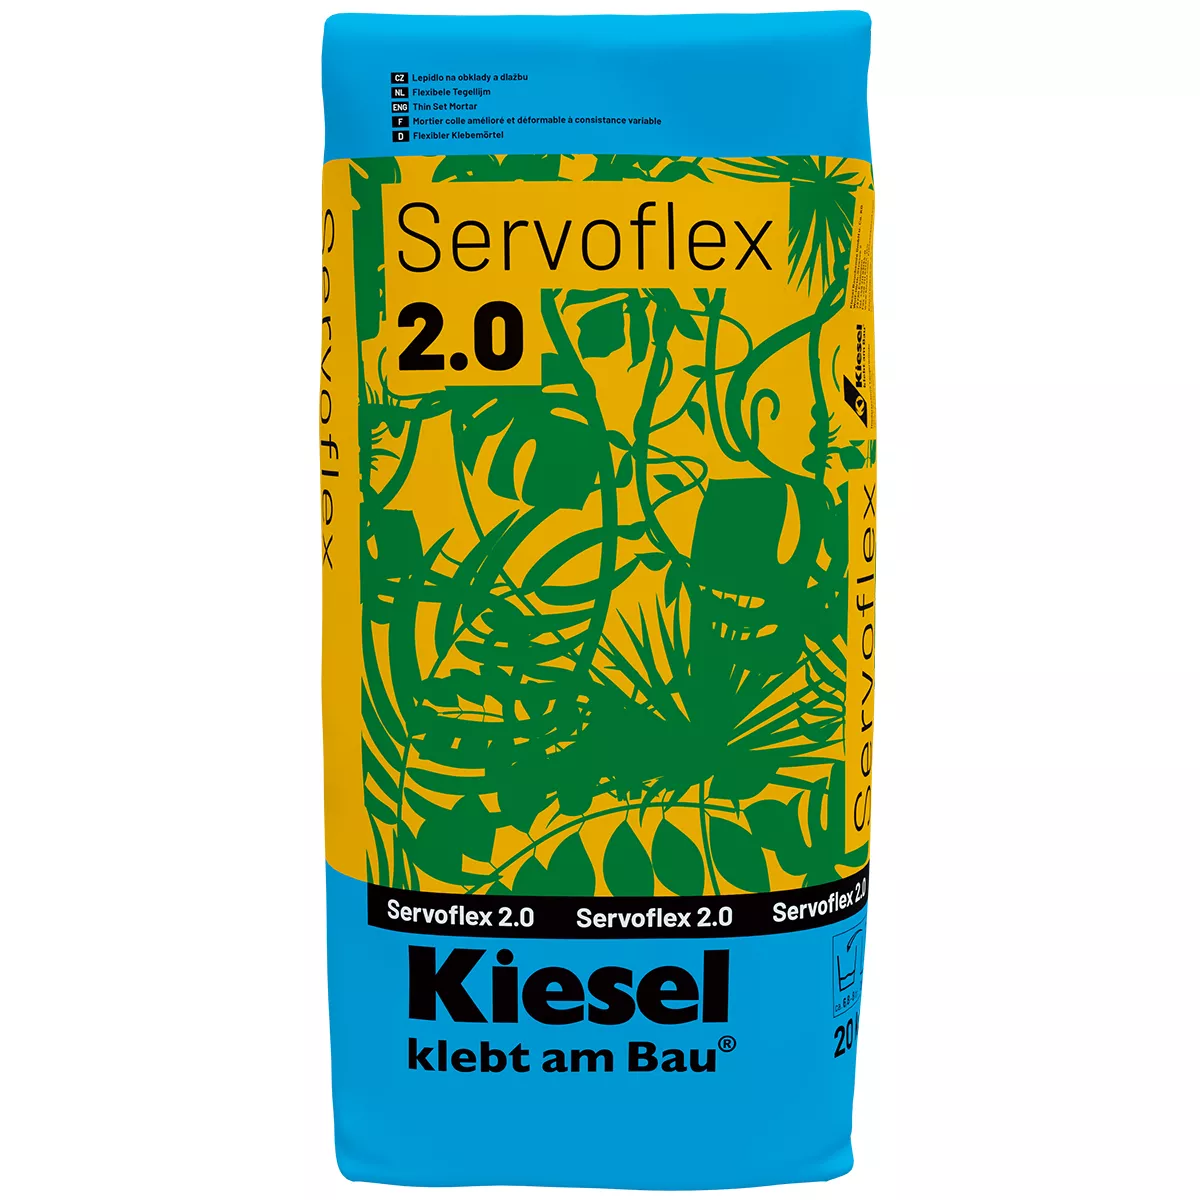 Fleksibilno ljepilo za pločice Kiesel Servoflex 2.0 20 kg